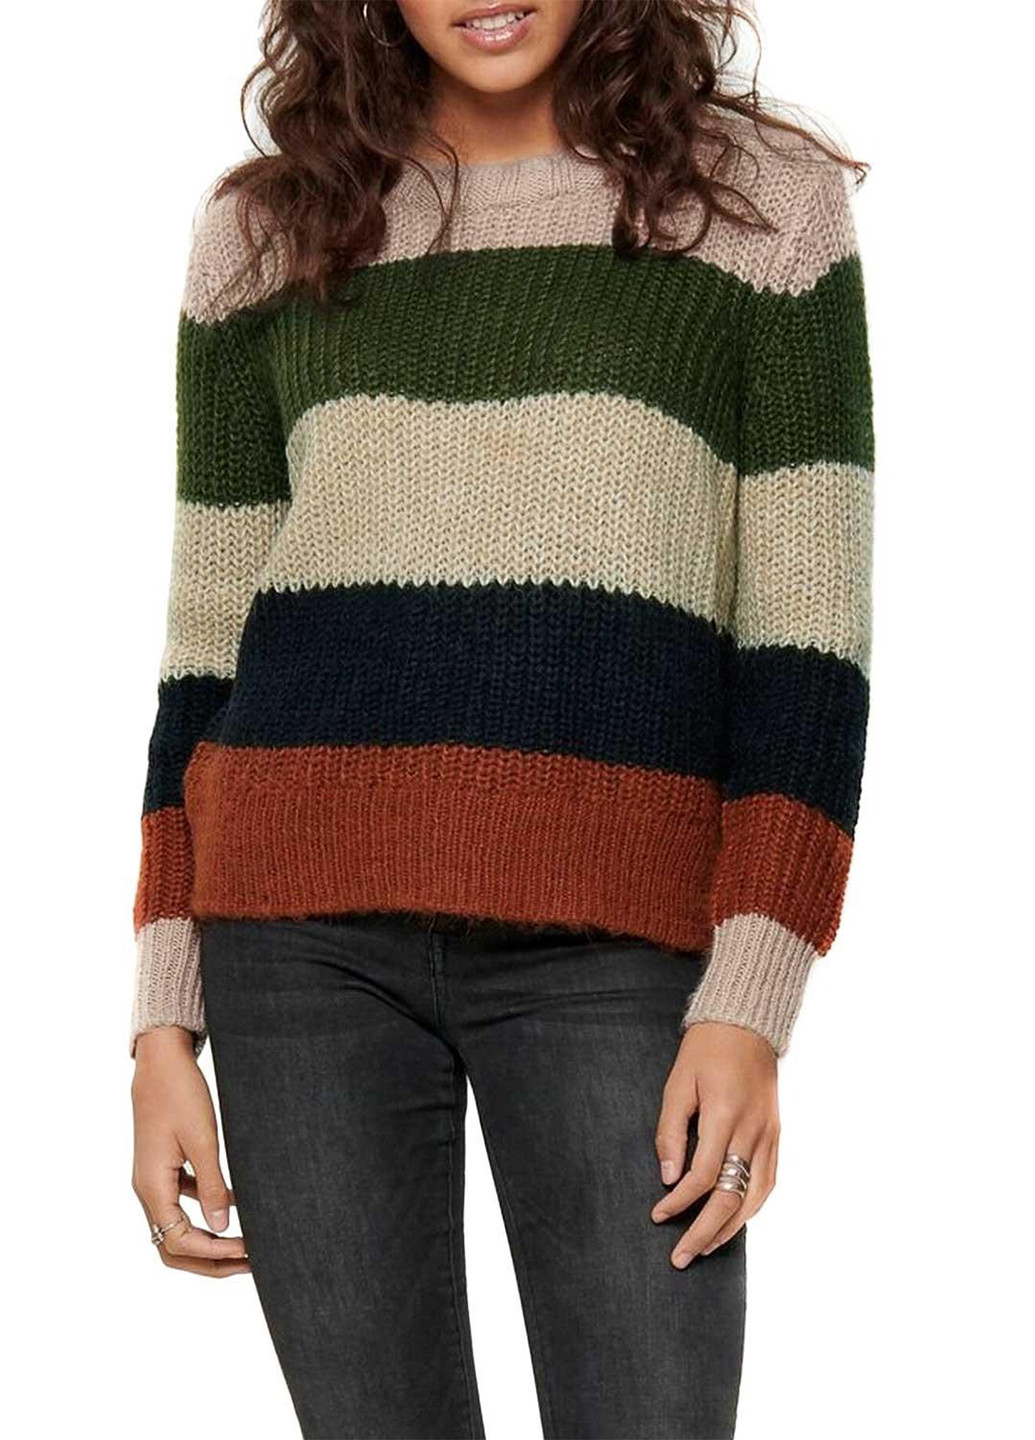 Комбинированный зимний свитер джемпер Only